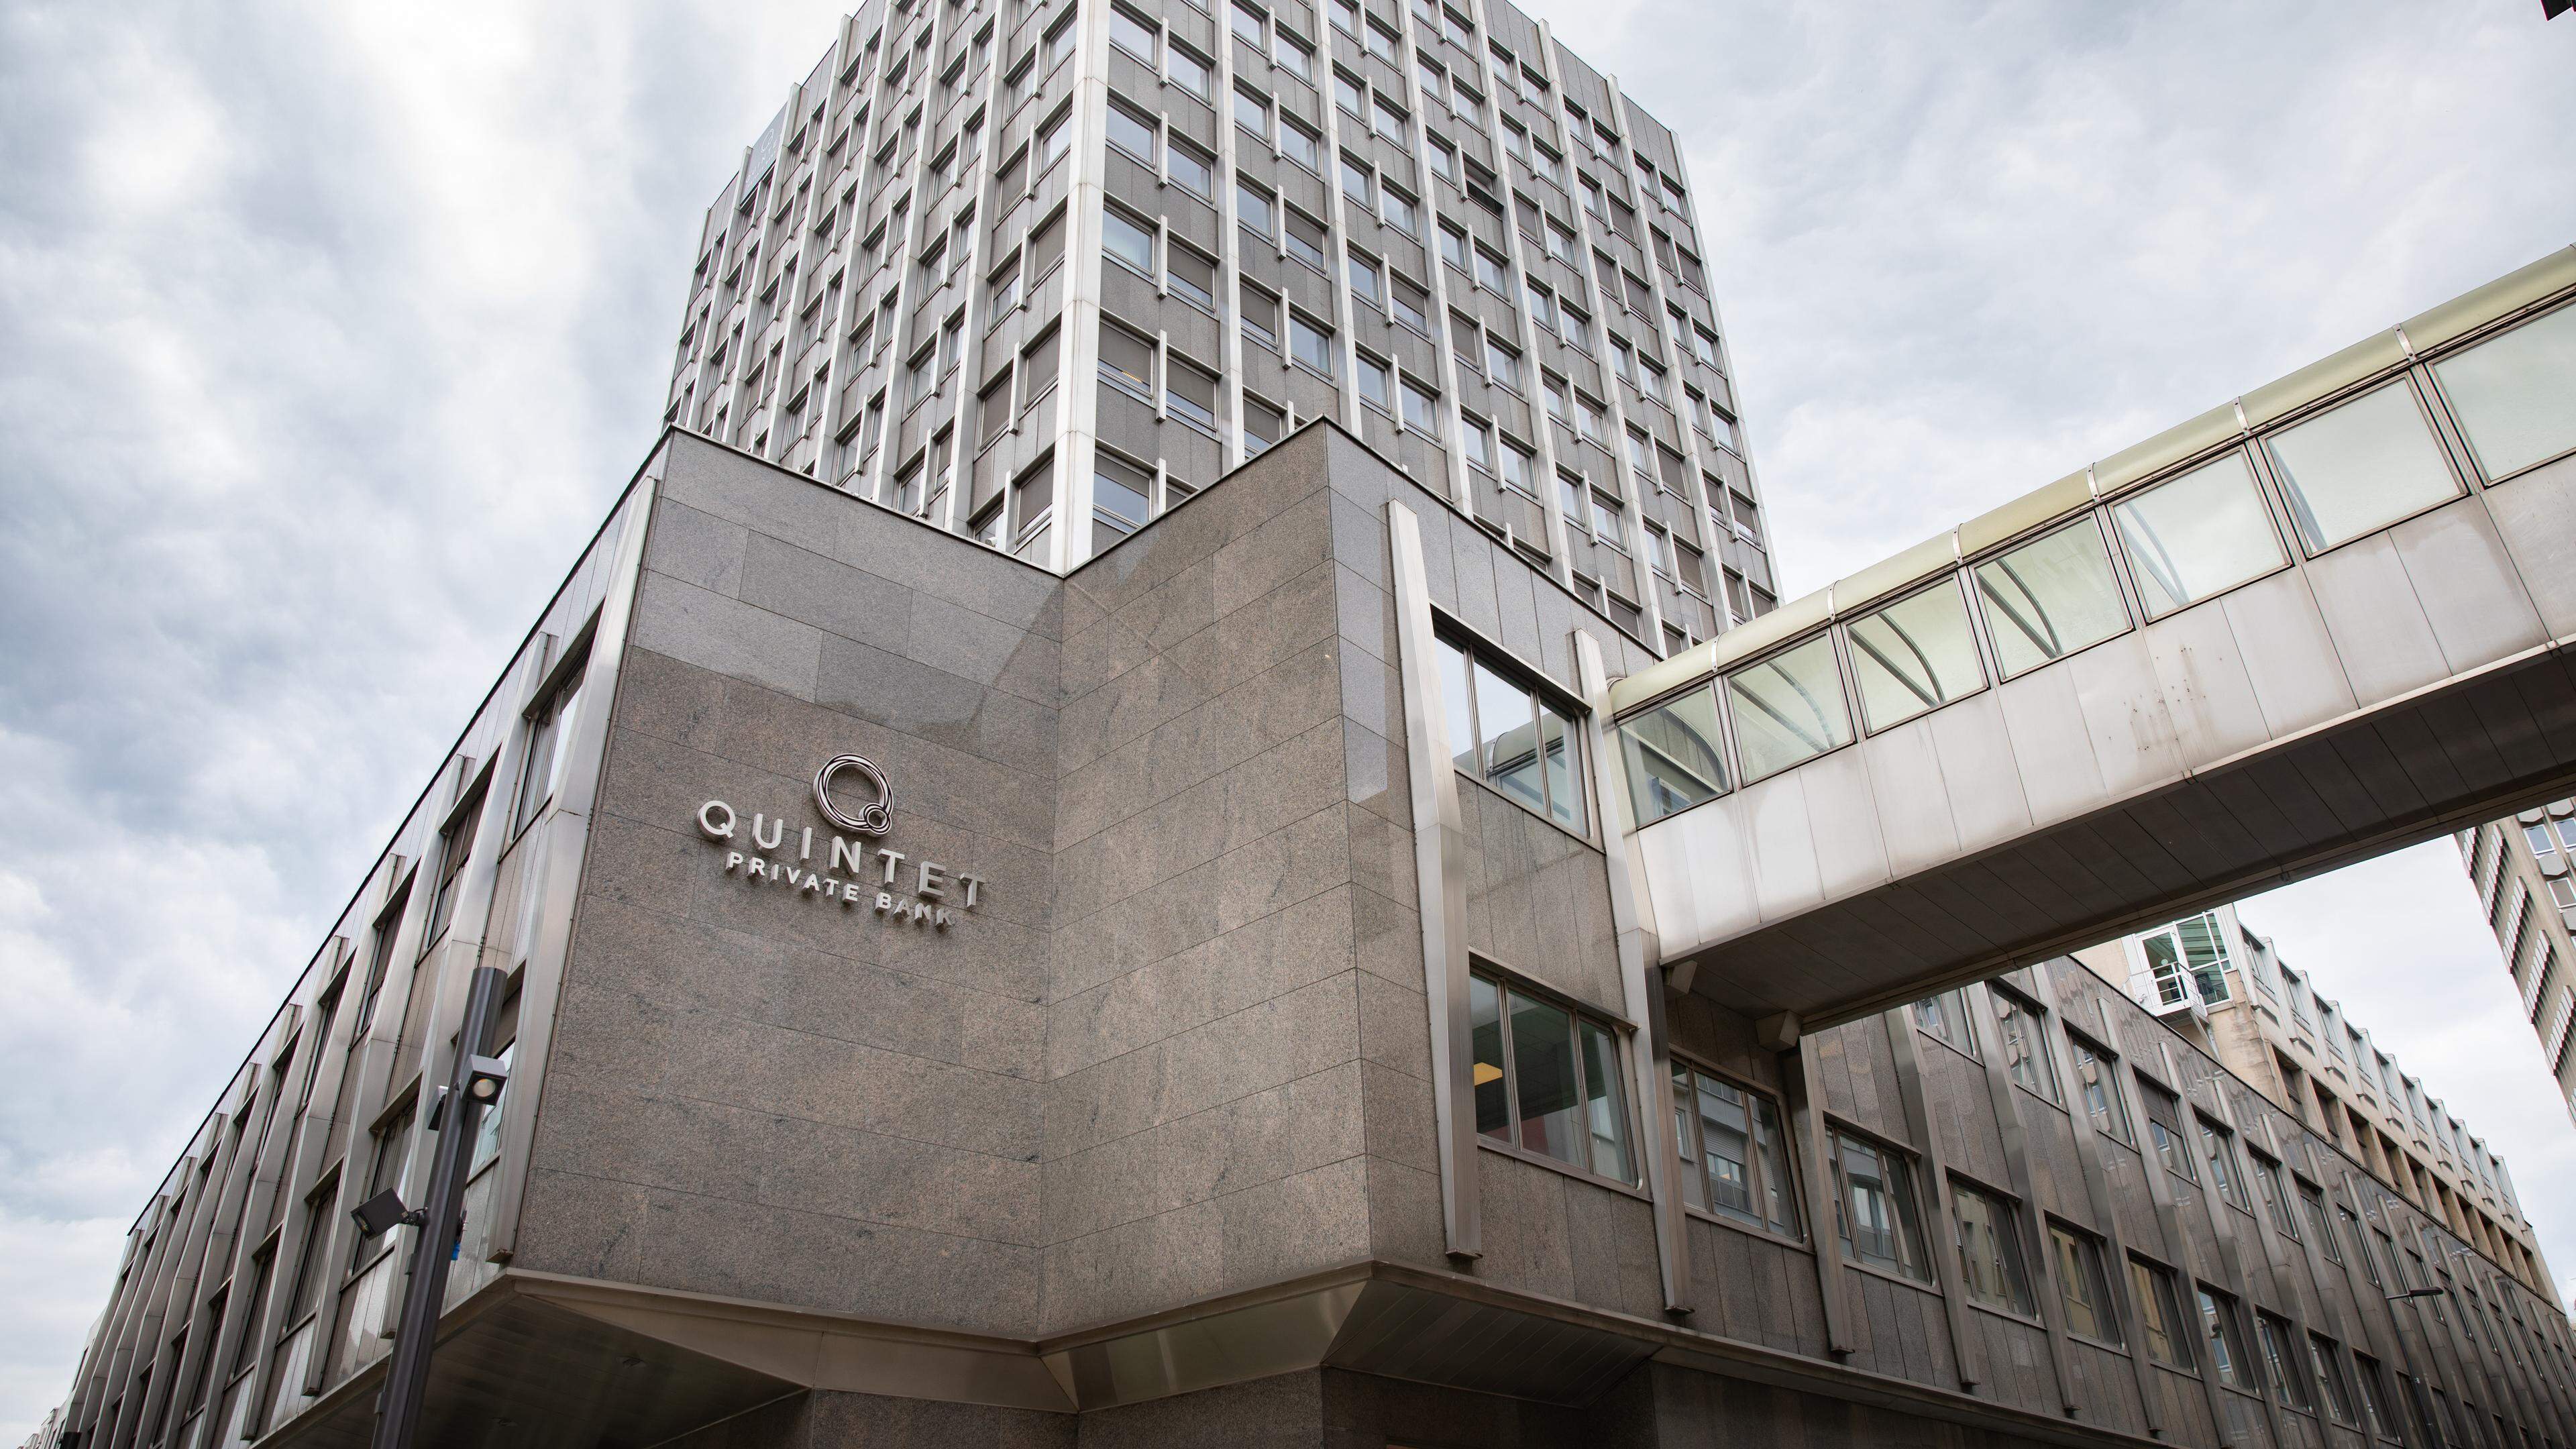 Le siège de Quintet Private Bank dans le centre-ville de la capitale luxembourgeoise.